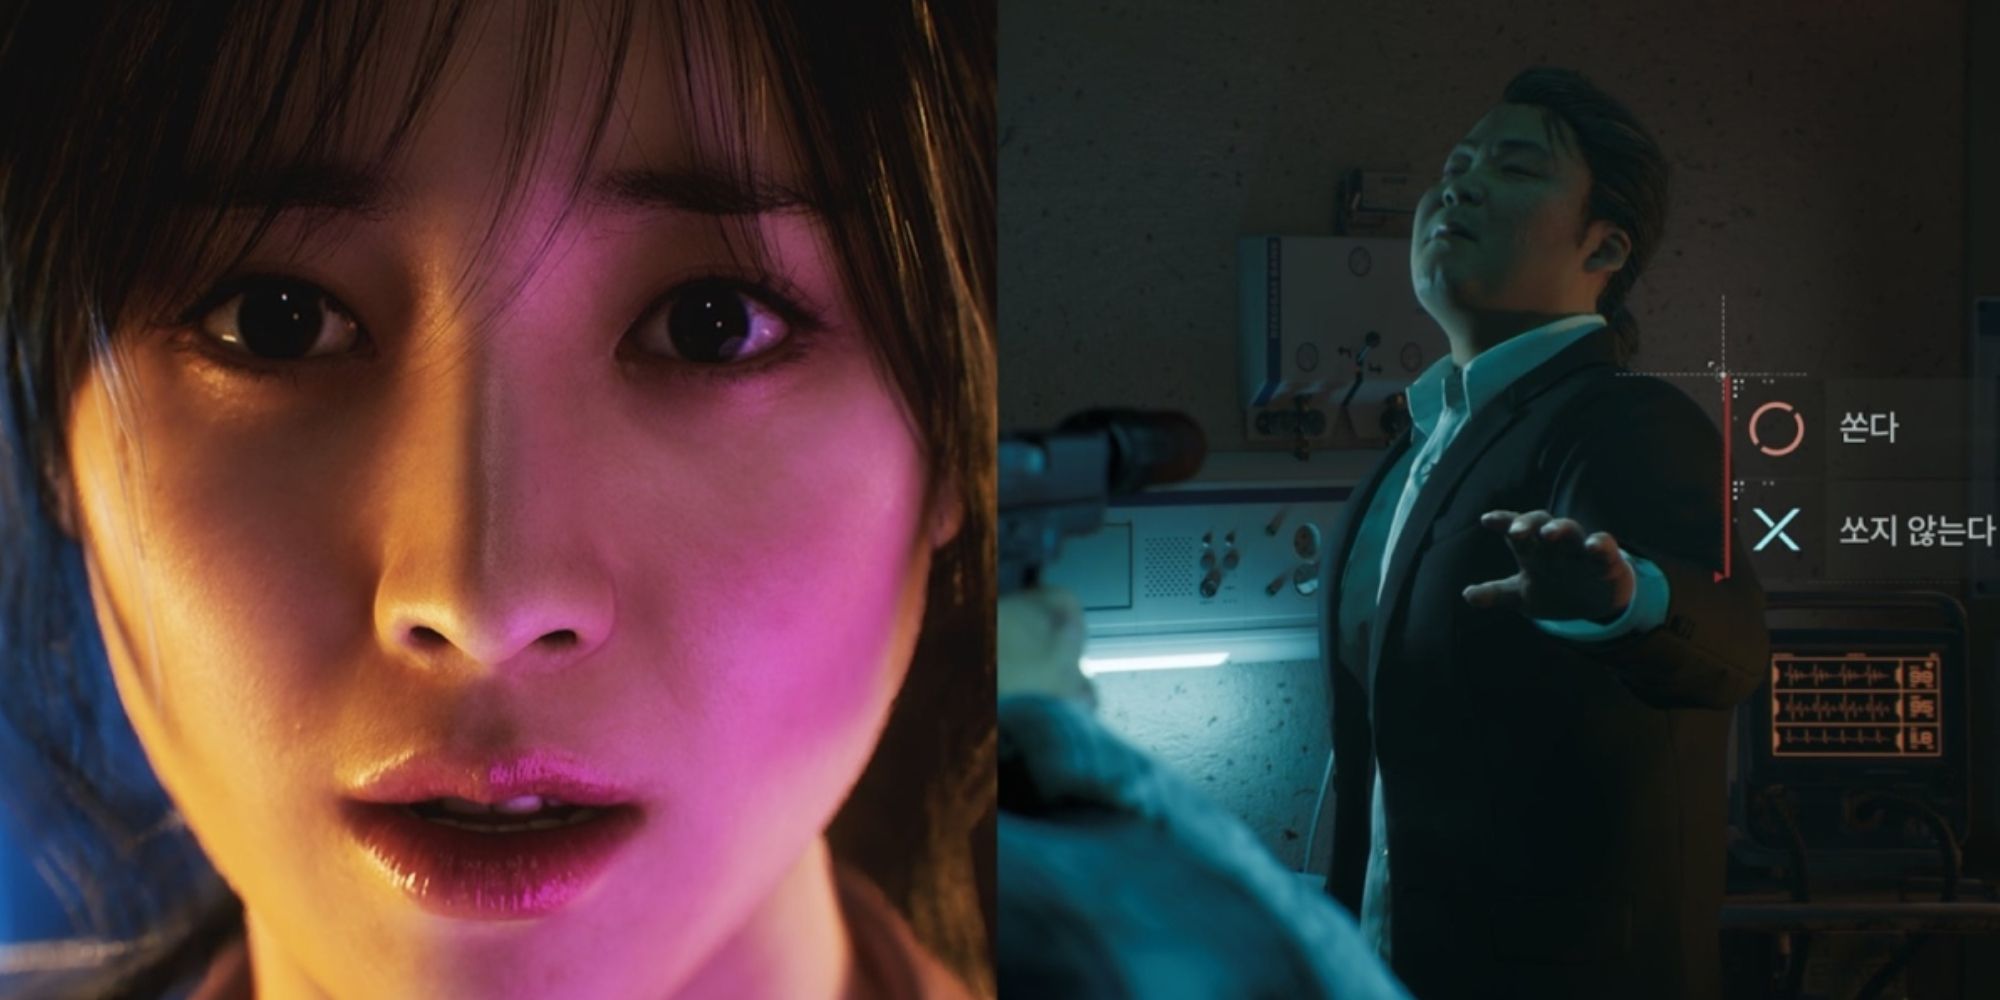 Personagens de jogos fotorrealistas do Projeto M. À esquerda, uma mulher coreana olha para a frente com um olhar chocado em seu rosto.  À direita, um homem levanta a mão defensivamente, a interface do jogo está dando ao jogador uma opção em coreano.